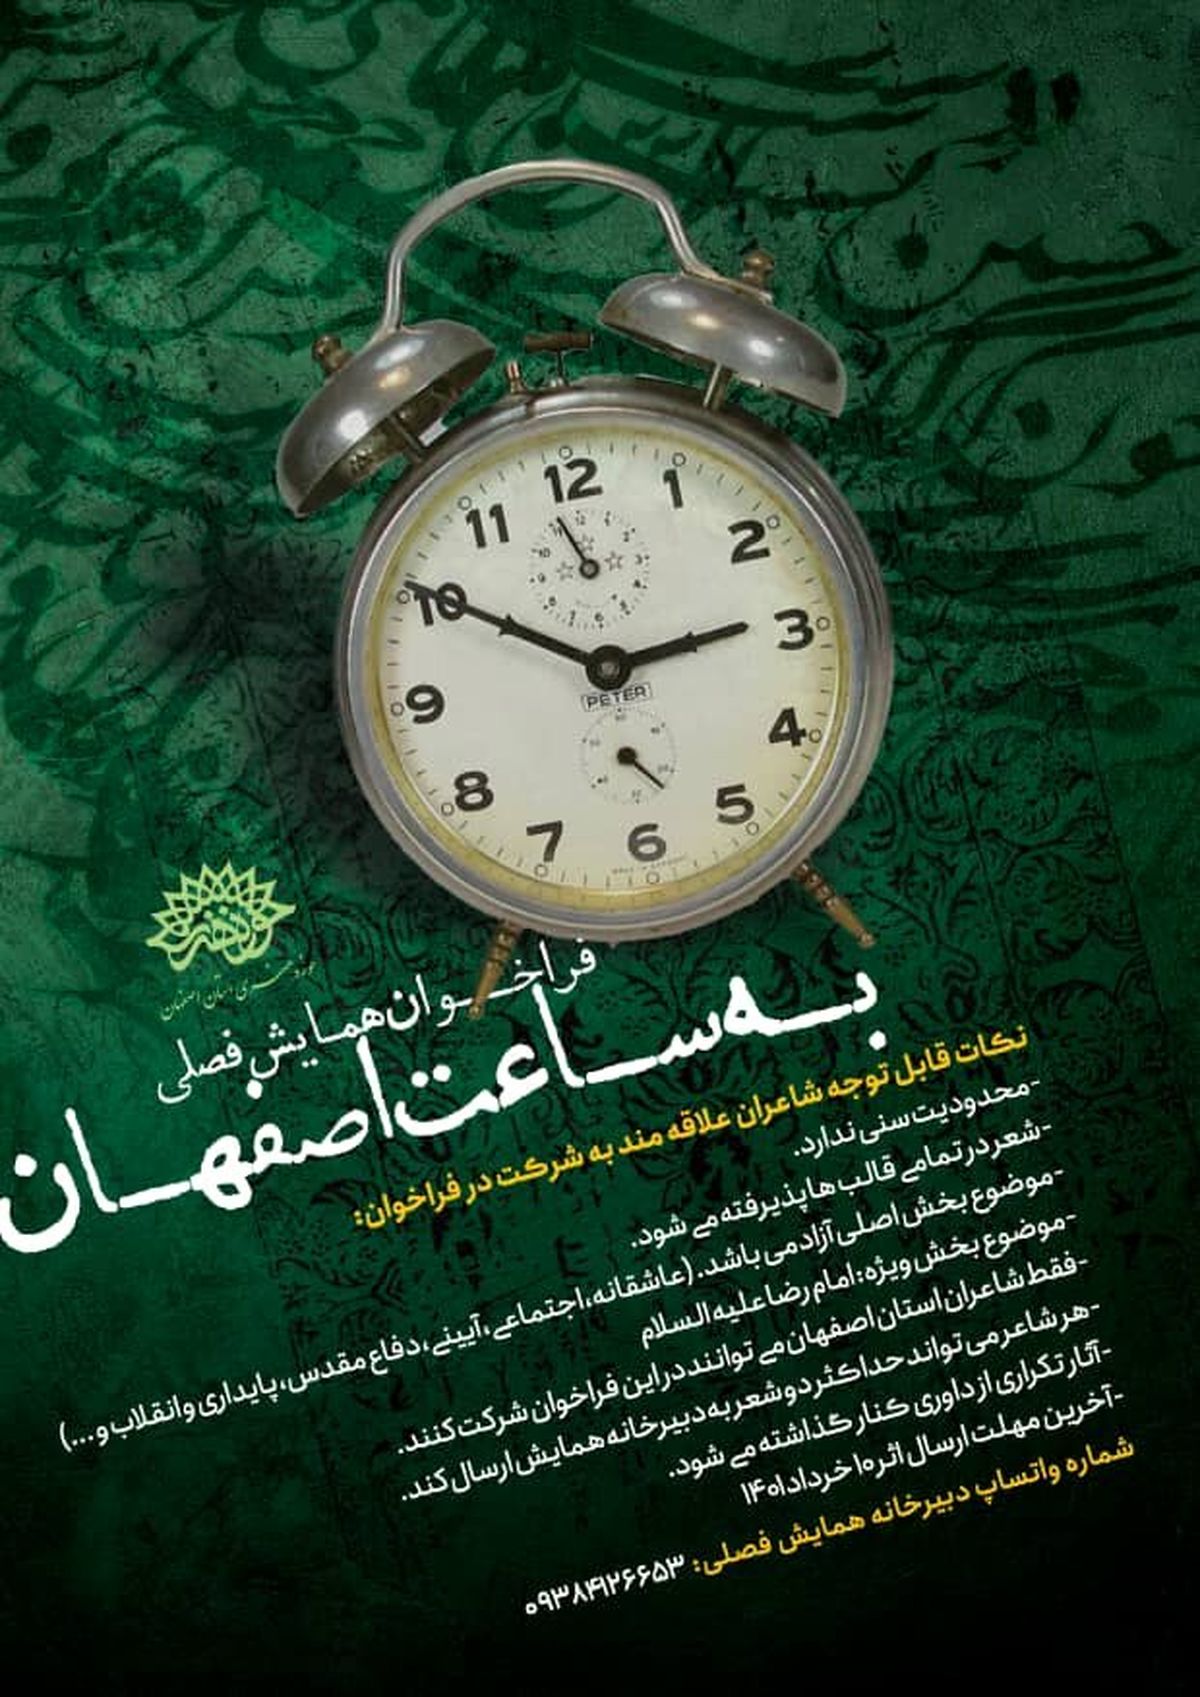 فراخوان همایش فصلی به ساعت اصفهان منتشر شد